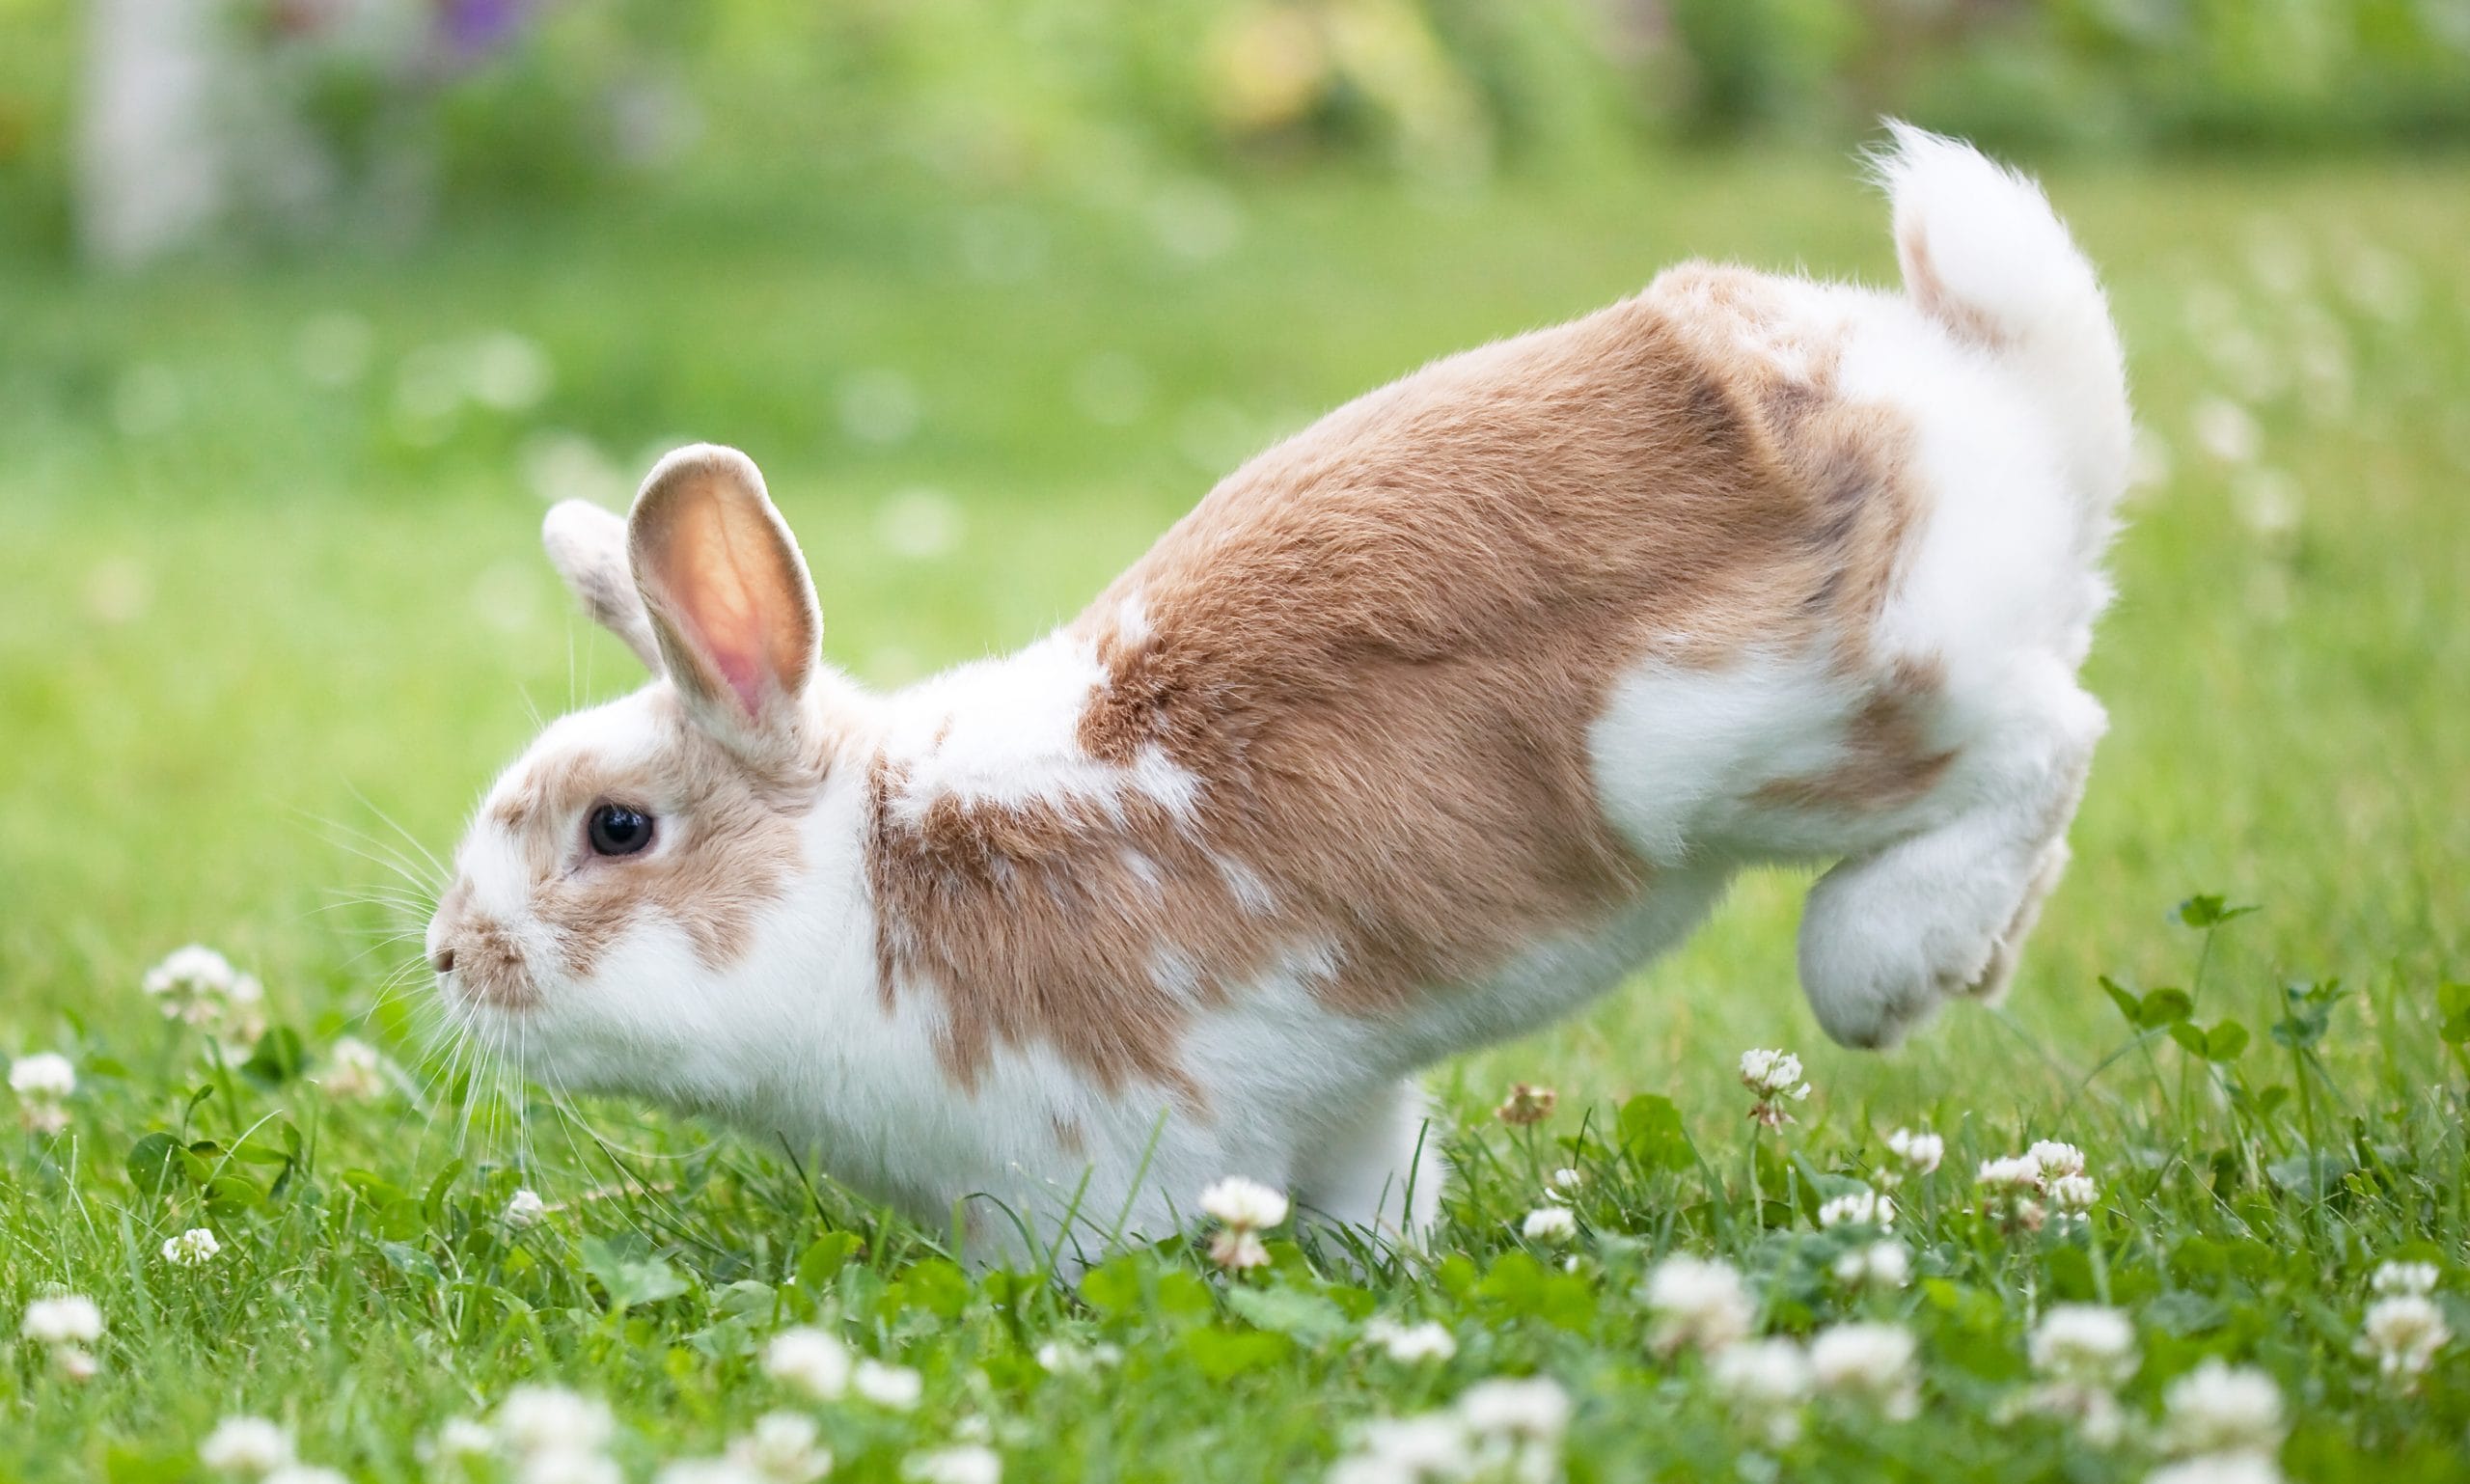 Understanding Your Rabbit's Body Language: 16 Common Behaviors